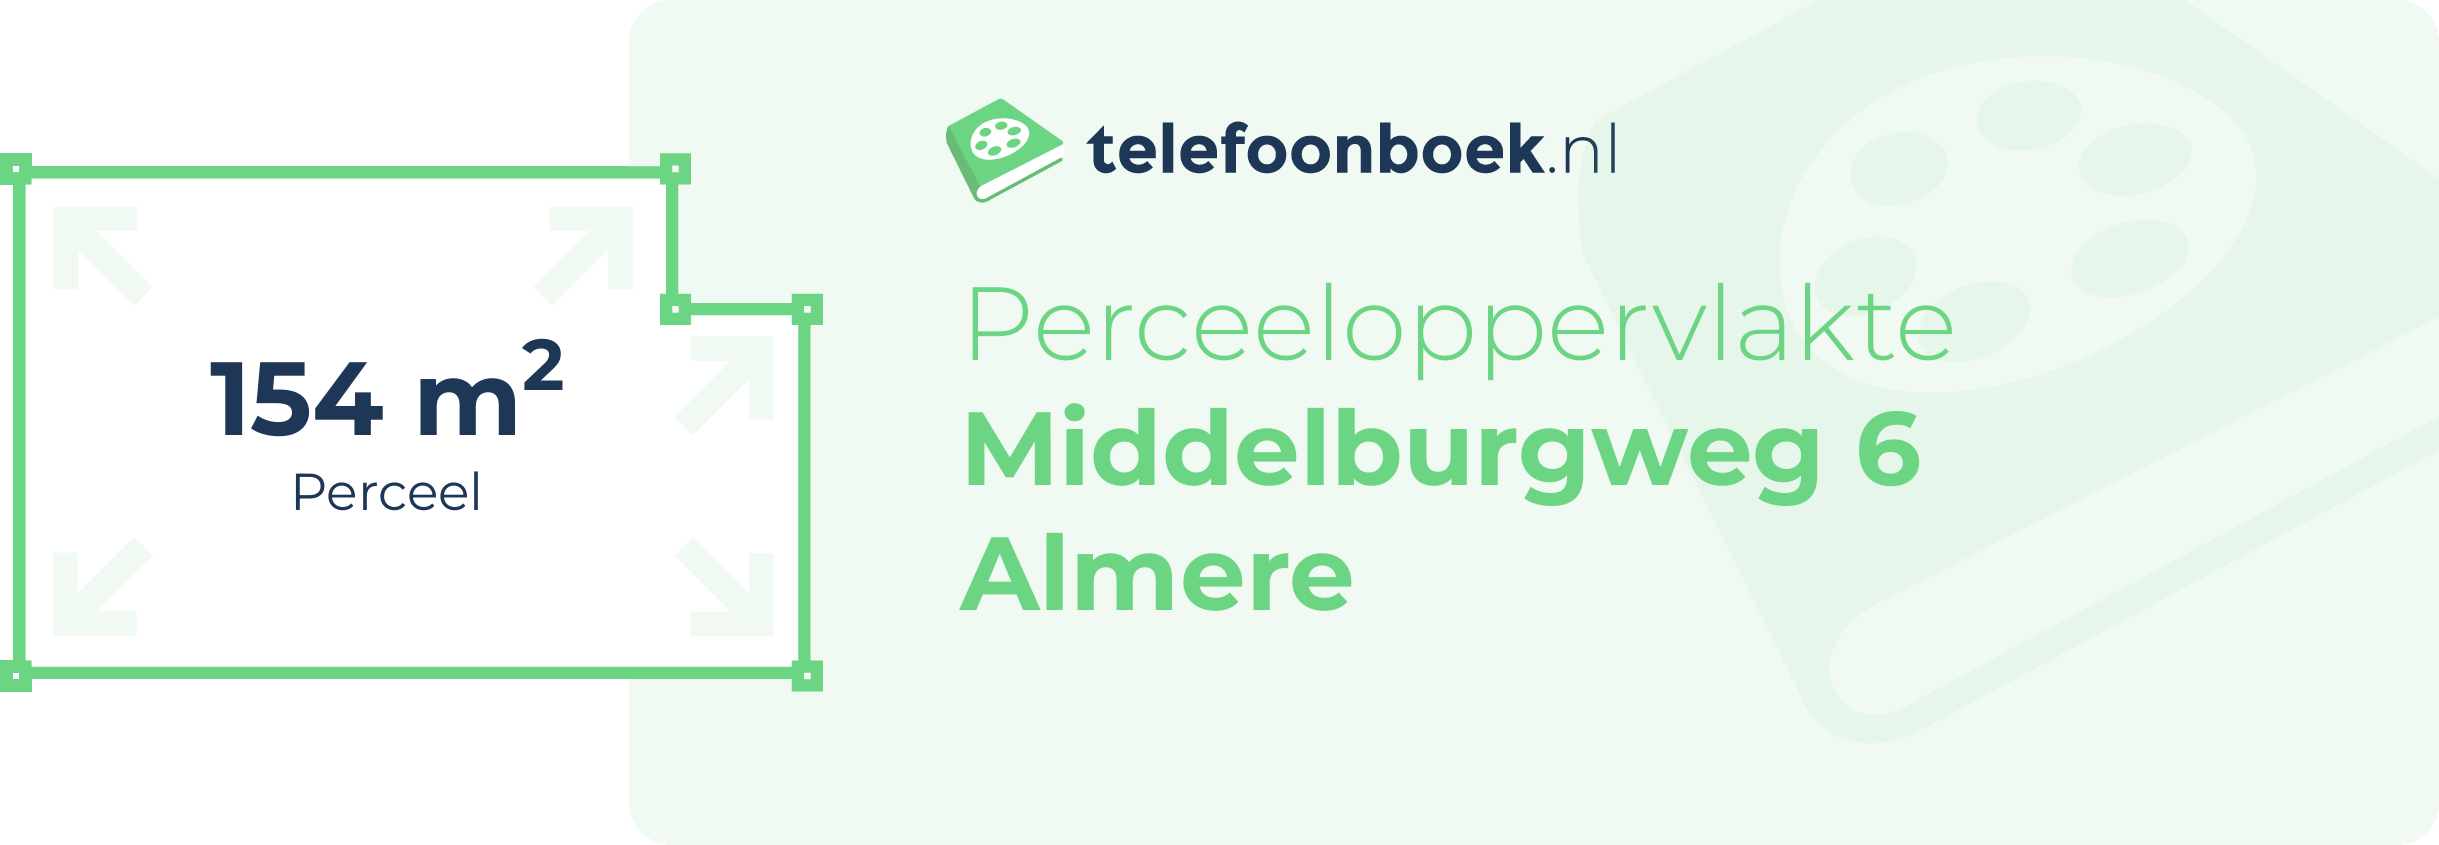 Perceeloppervlakte Middelburgweg 6 Almere